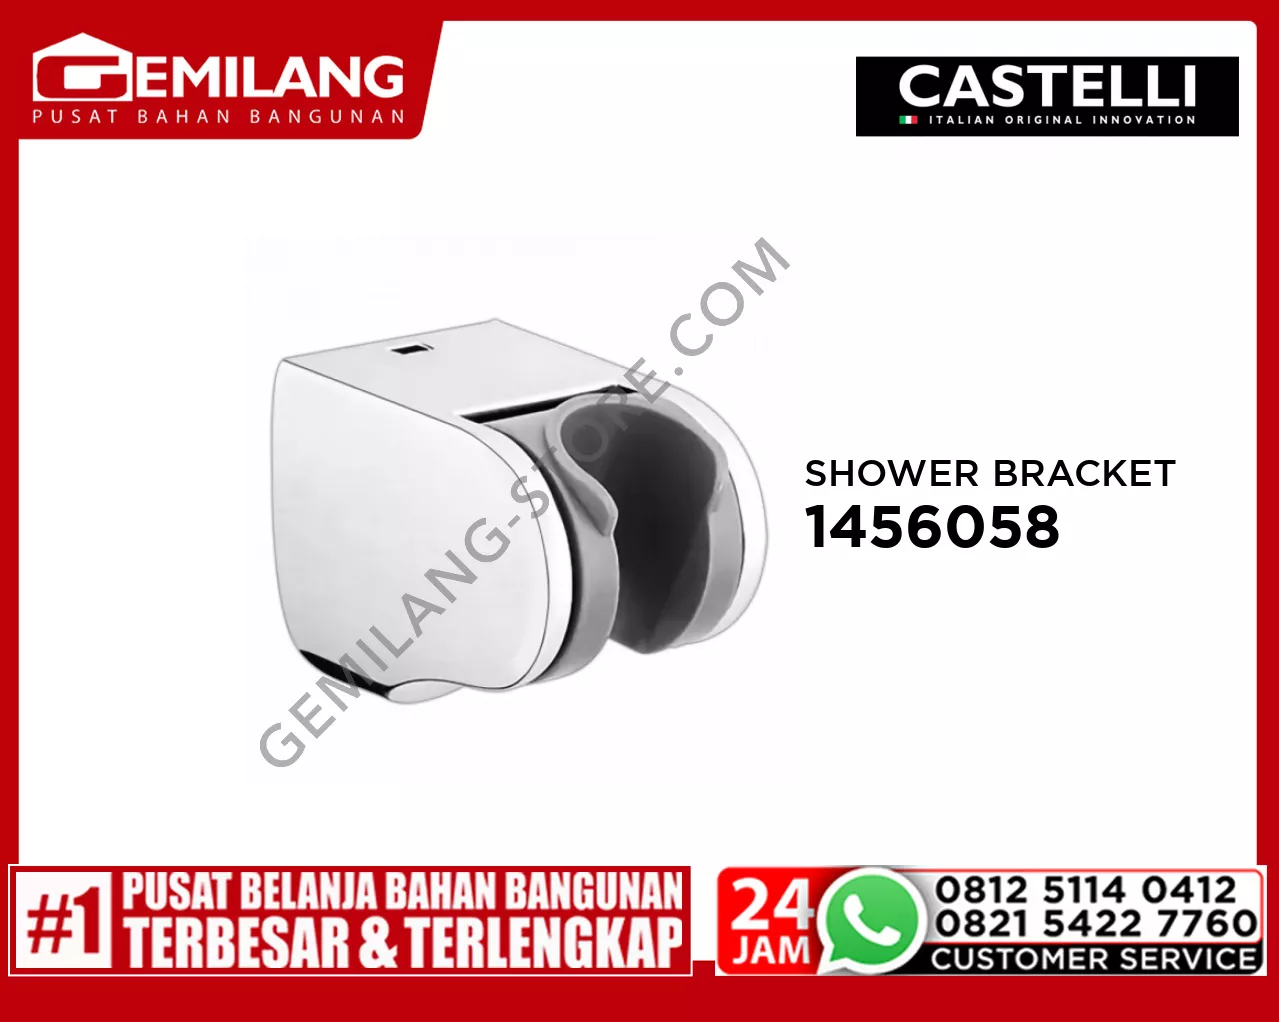 CASTELLI SHOWER BRACKET 1456058